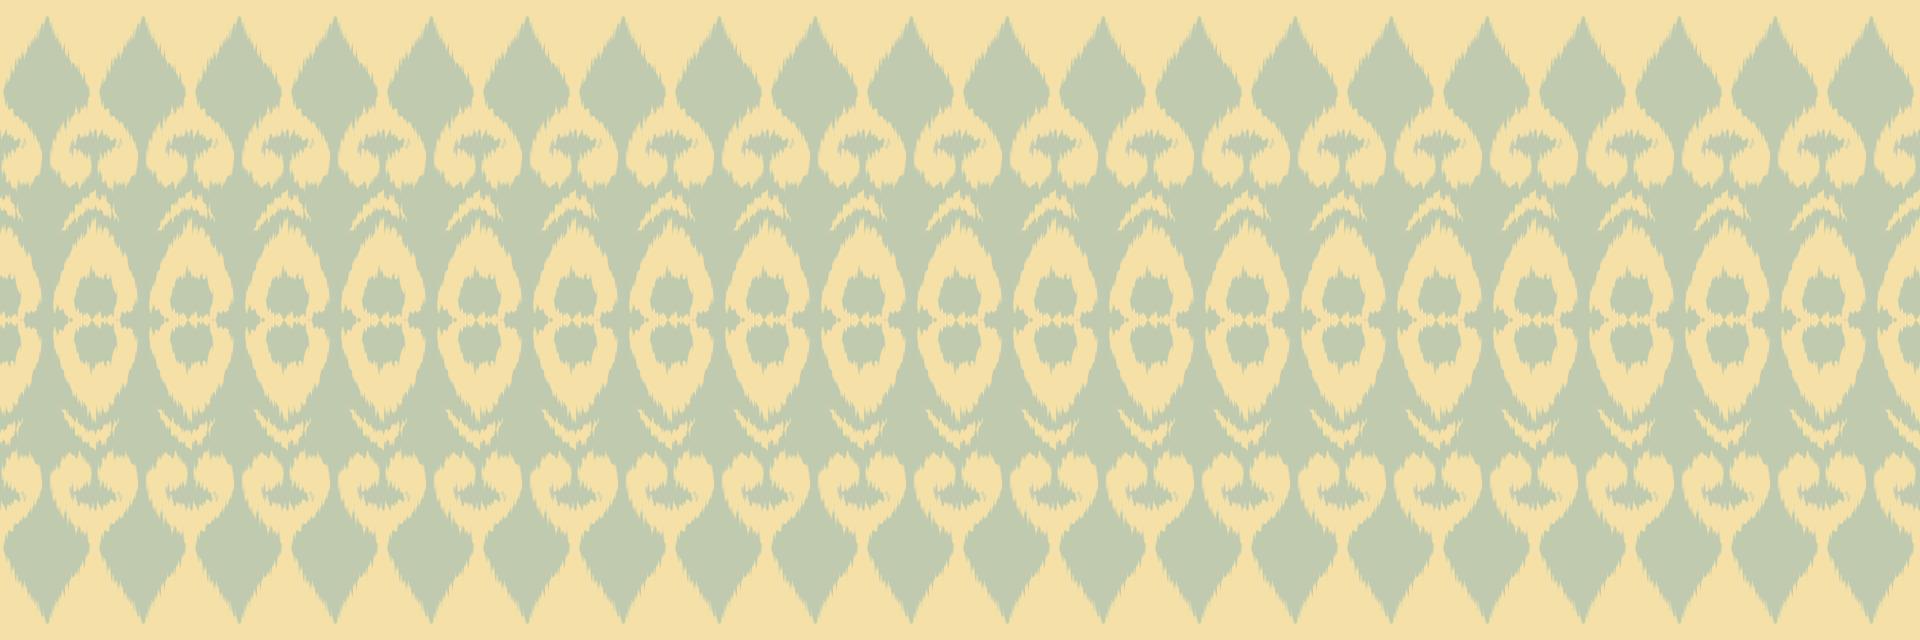 batik textil- motiv ikat Ränder sömlös mönster digital vektor design för skriva ut saree kurti borneo tyg gräns borsta symboler färgrutor eleganta